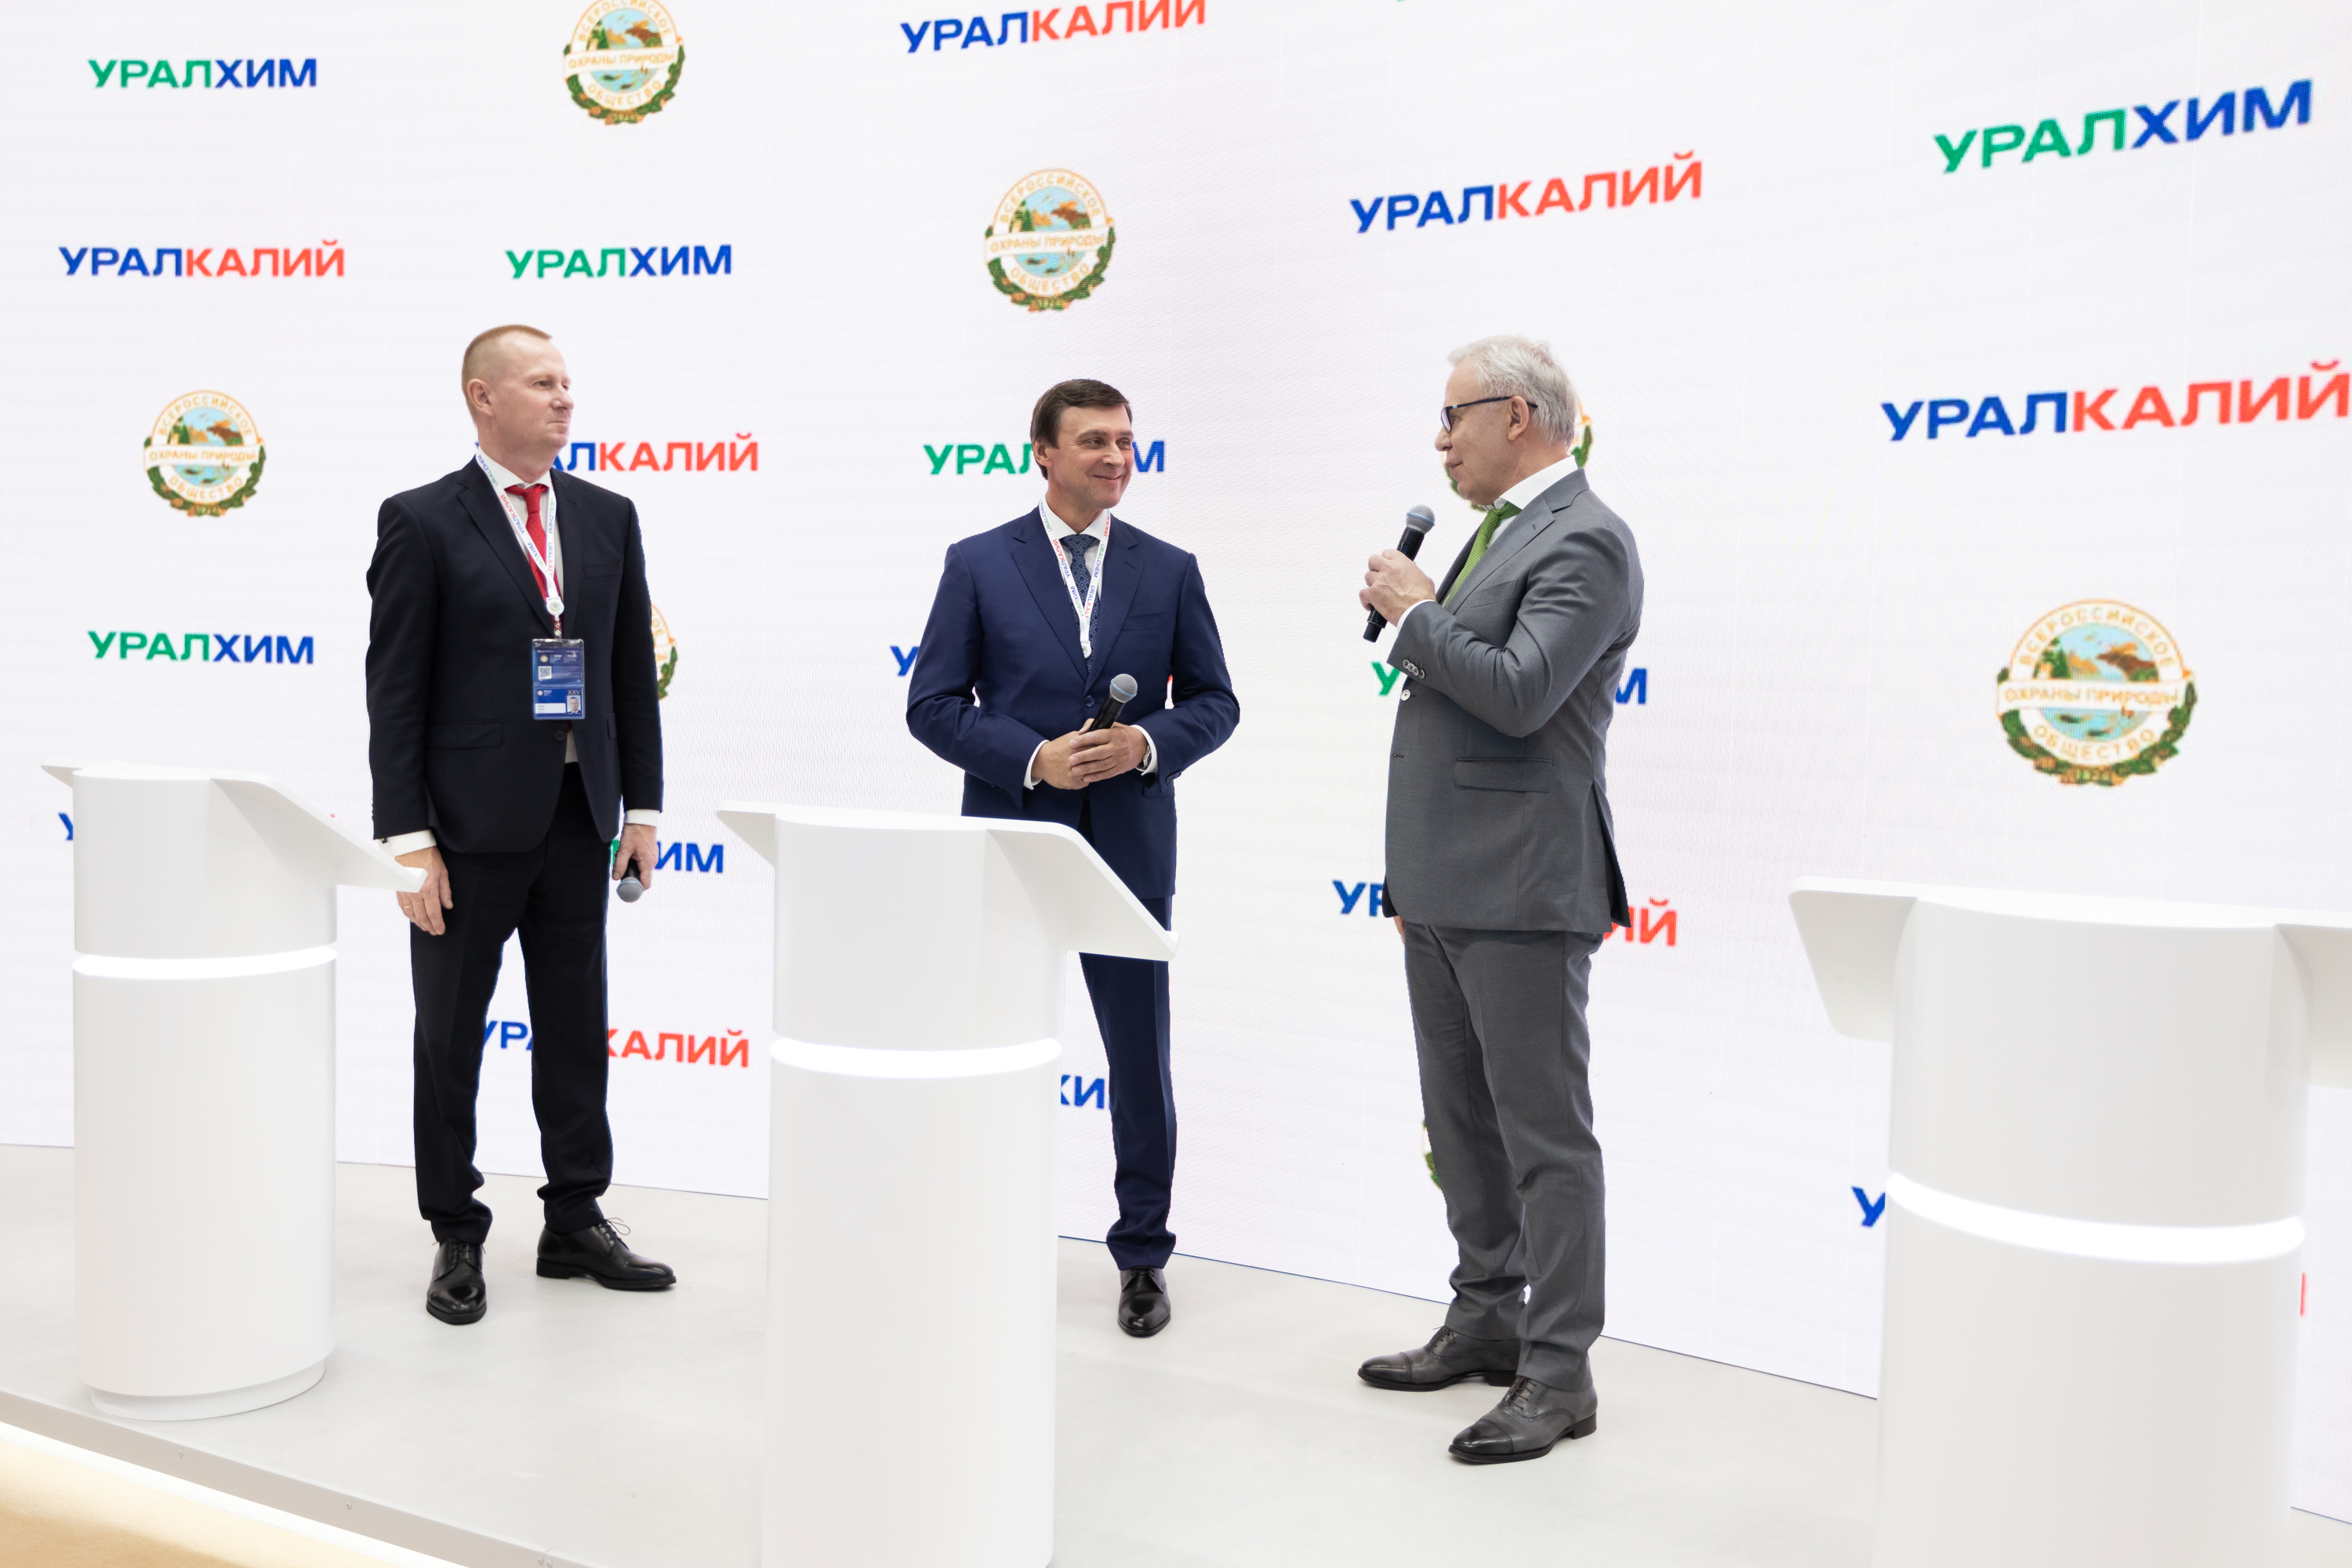 «Уралхим», «Уралкалий» и ВООП заключили соглашение о сотрудничестве